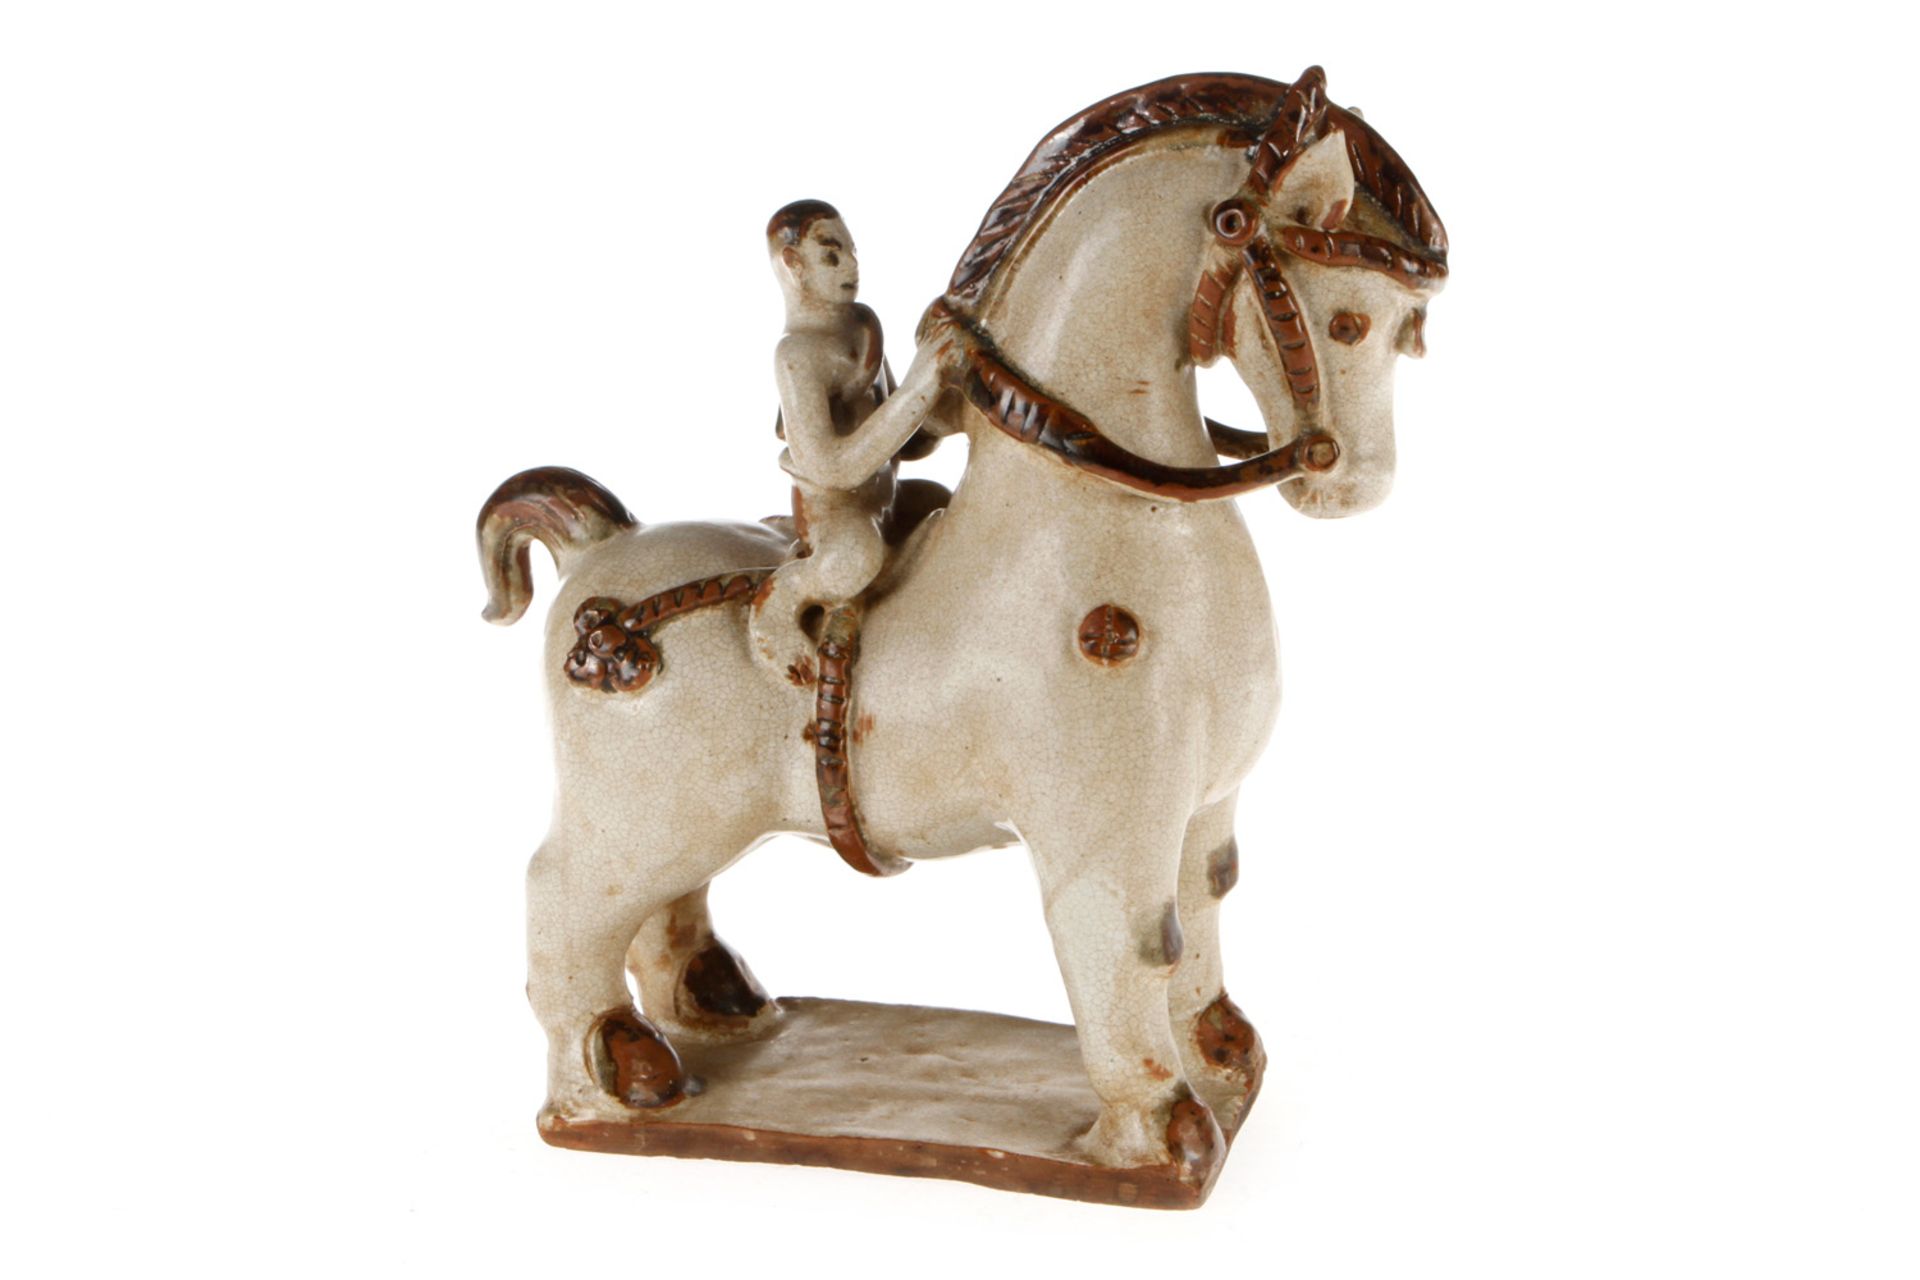 Pferd und Reiter, Siam/Sawankhalok, 18. Jahrhundert, Keramik, glasiert, H 30 cm